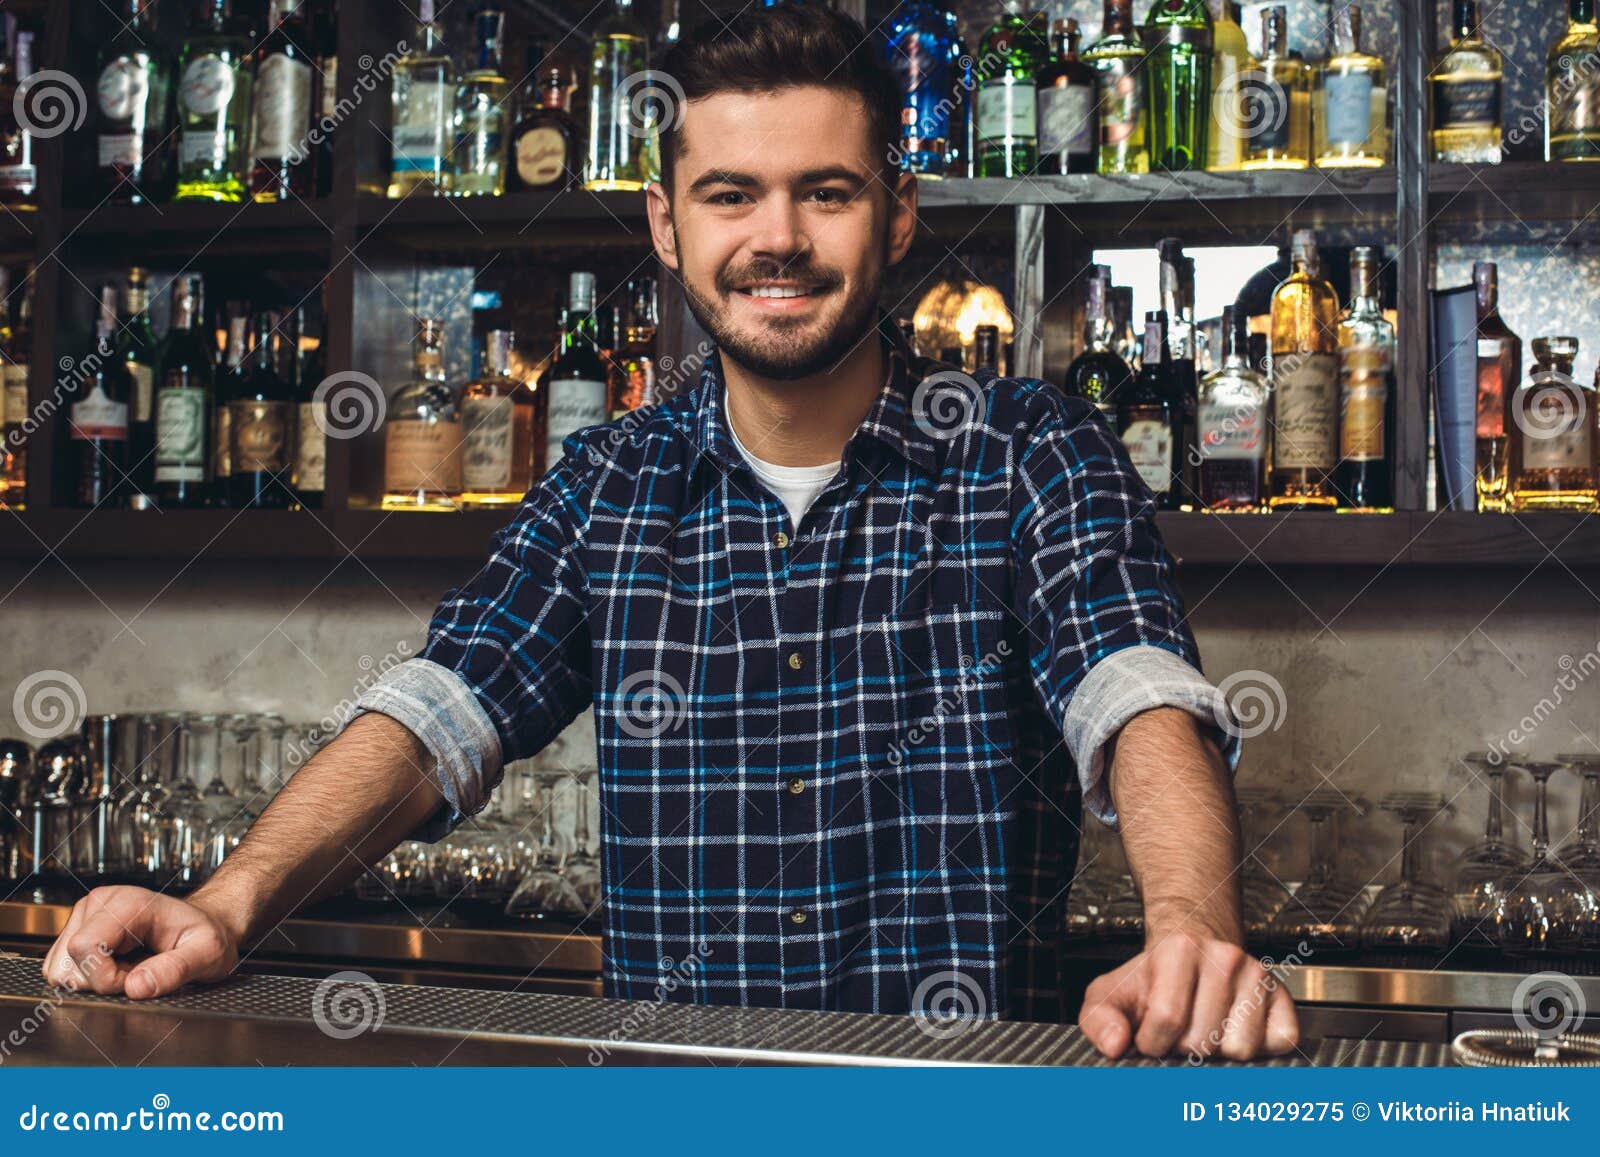 bartender 2 dream